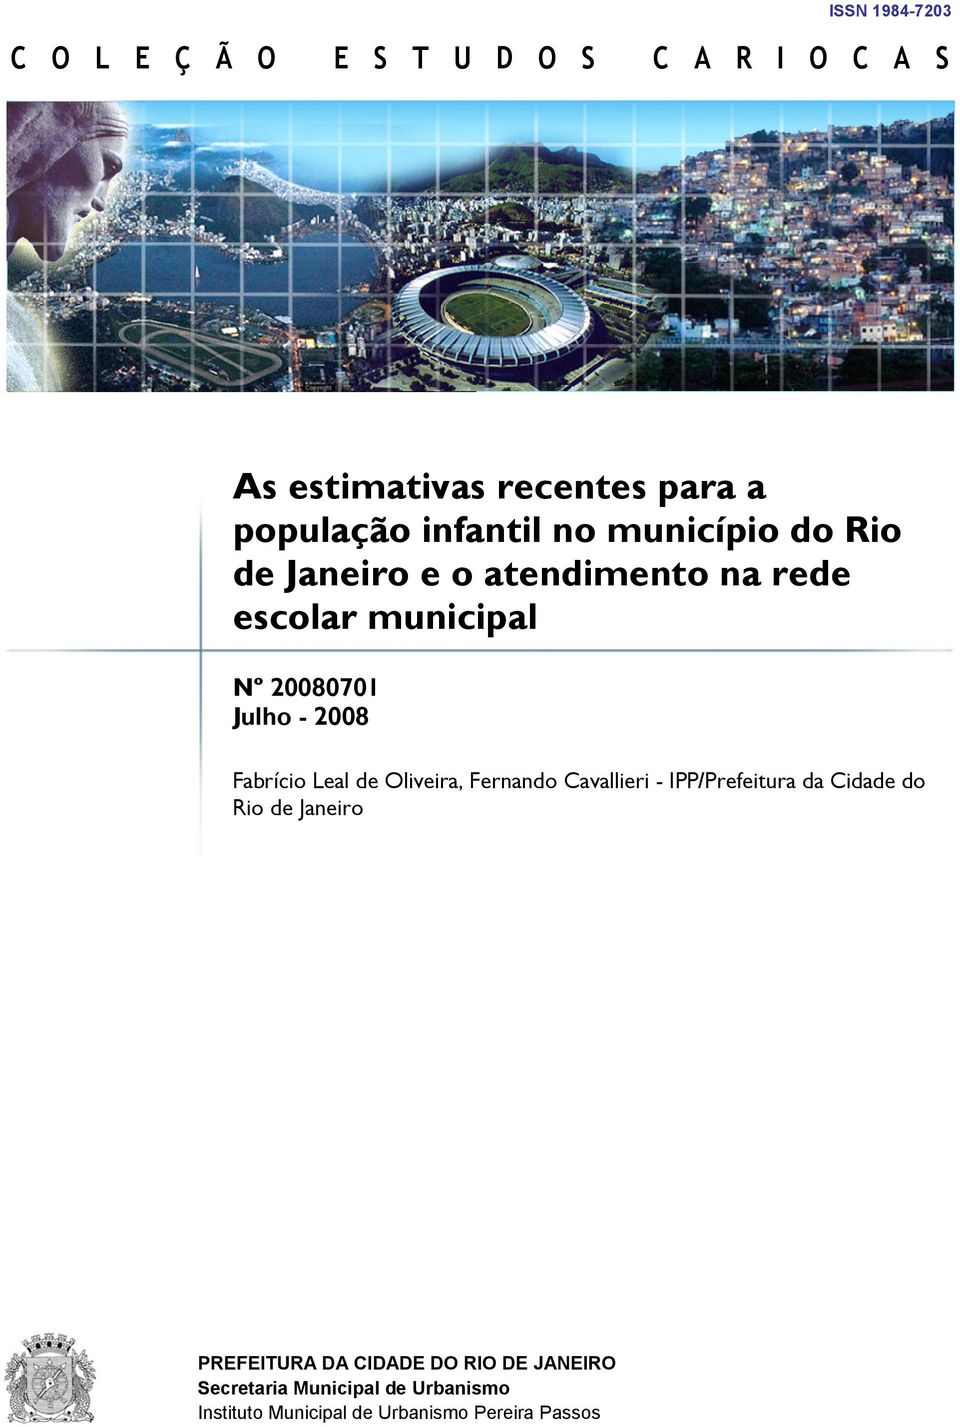 2008 Fabrício Leal de Oliveira, Fernando Cavallieri - IPP/Prefeitura da Cidade do Rio de Janeiro